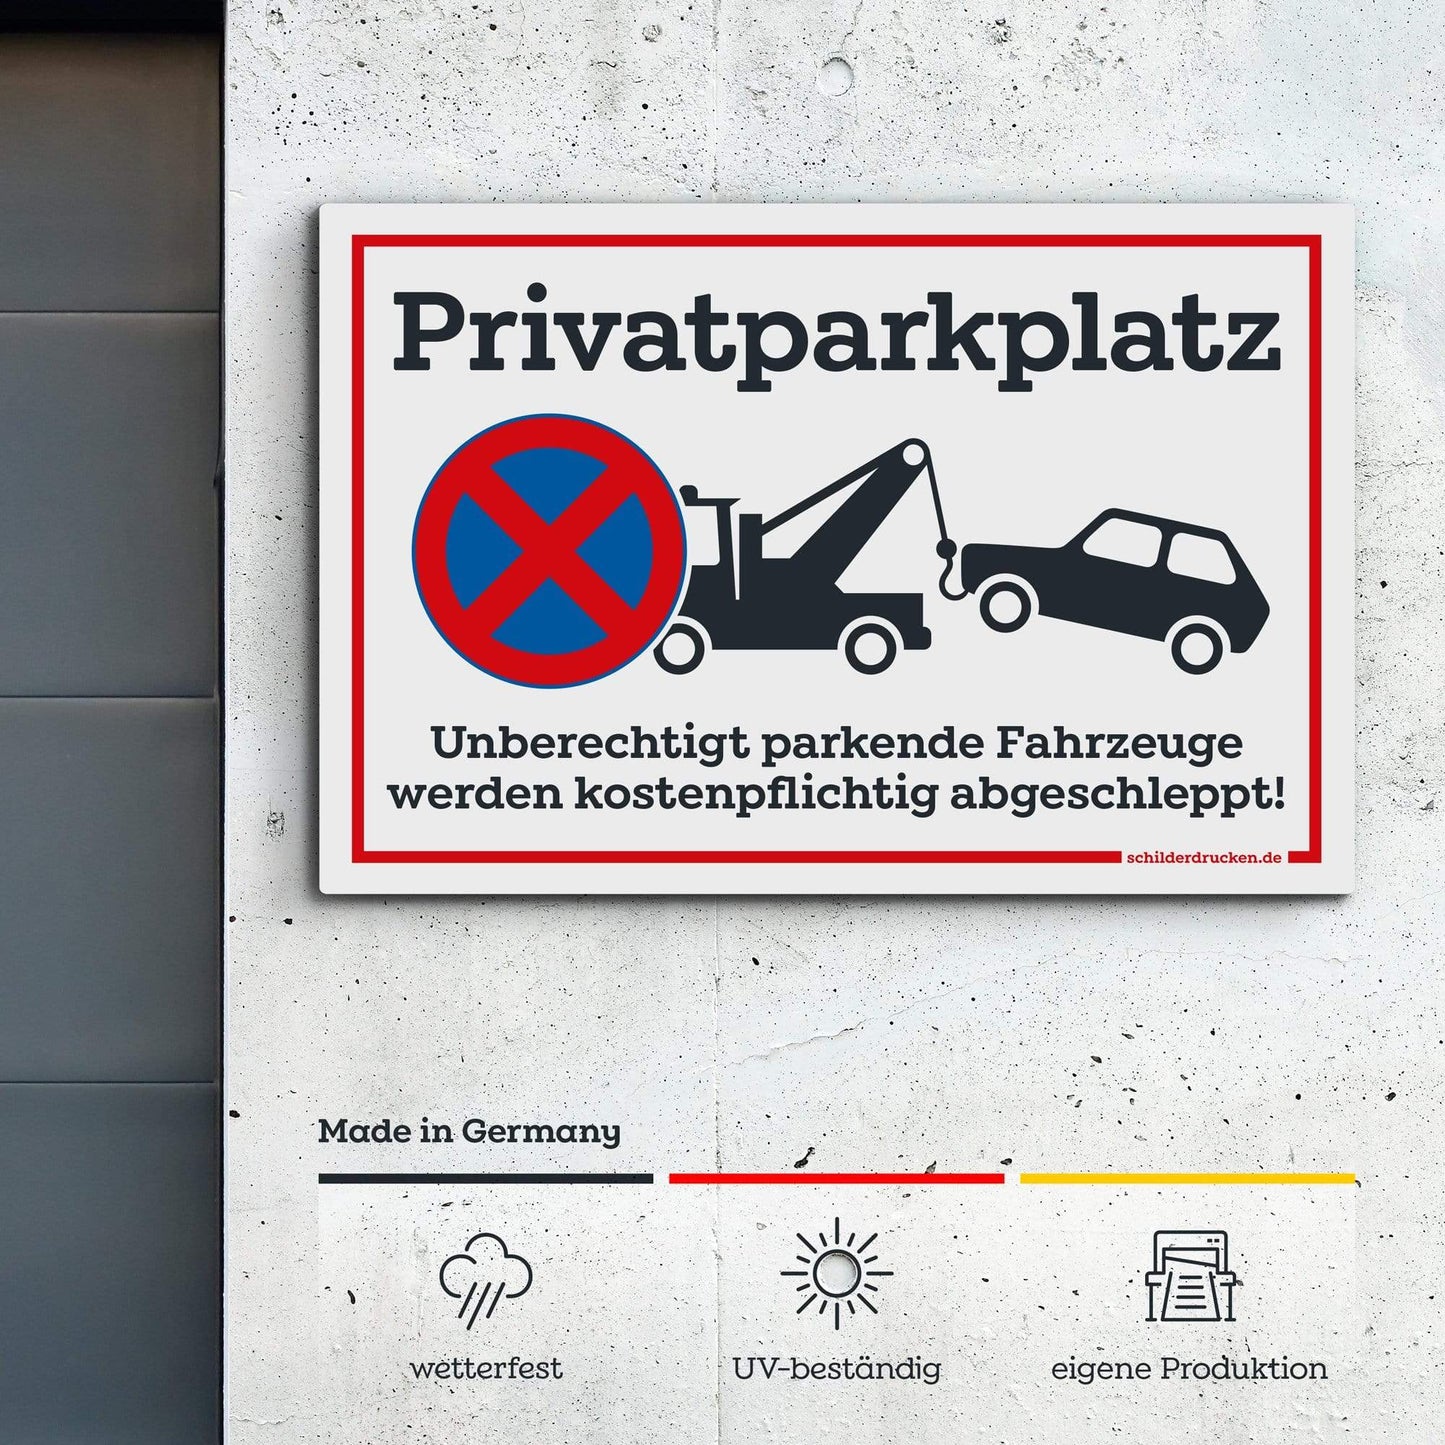 Privatparkplatz "Fahrzeuge werden kostenpflichtig abgeschleppt!" 10 x 15 cm / weiss / Alu-Dibond online drucken lassen bei schilderdrucken.de